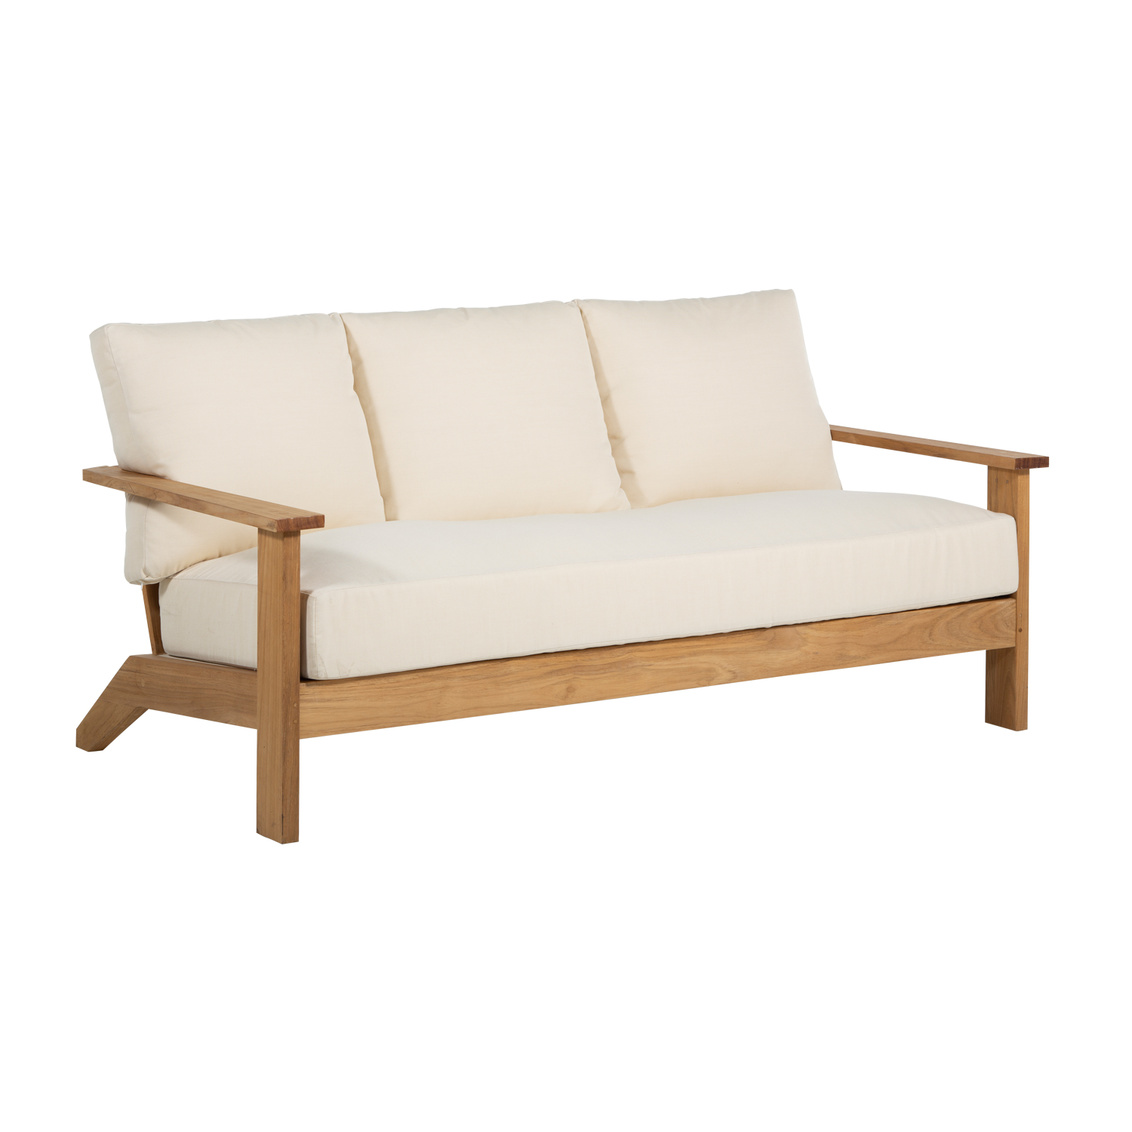 ashland teak sofa in natural teak – frame only product image